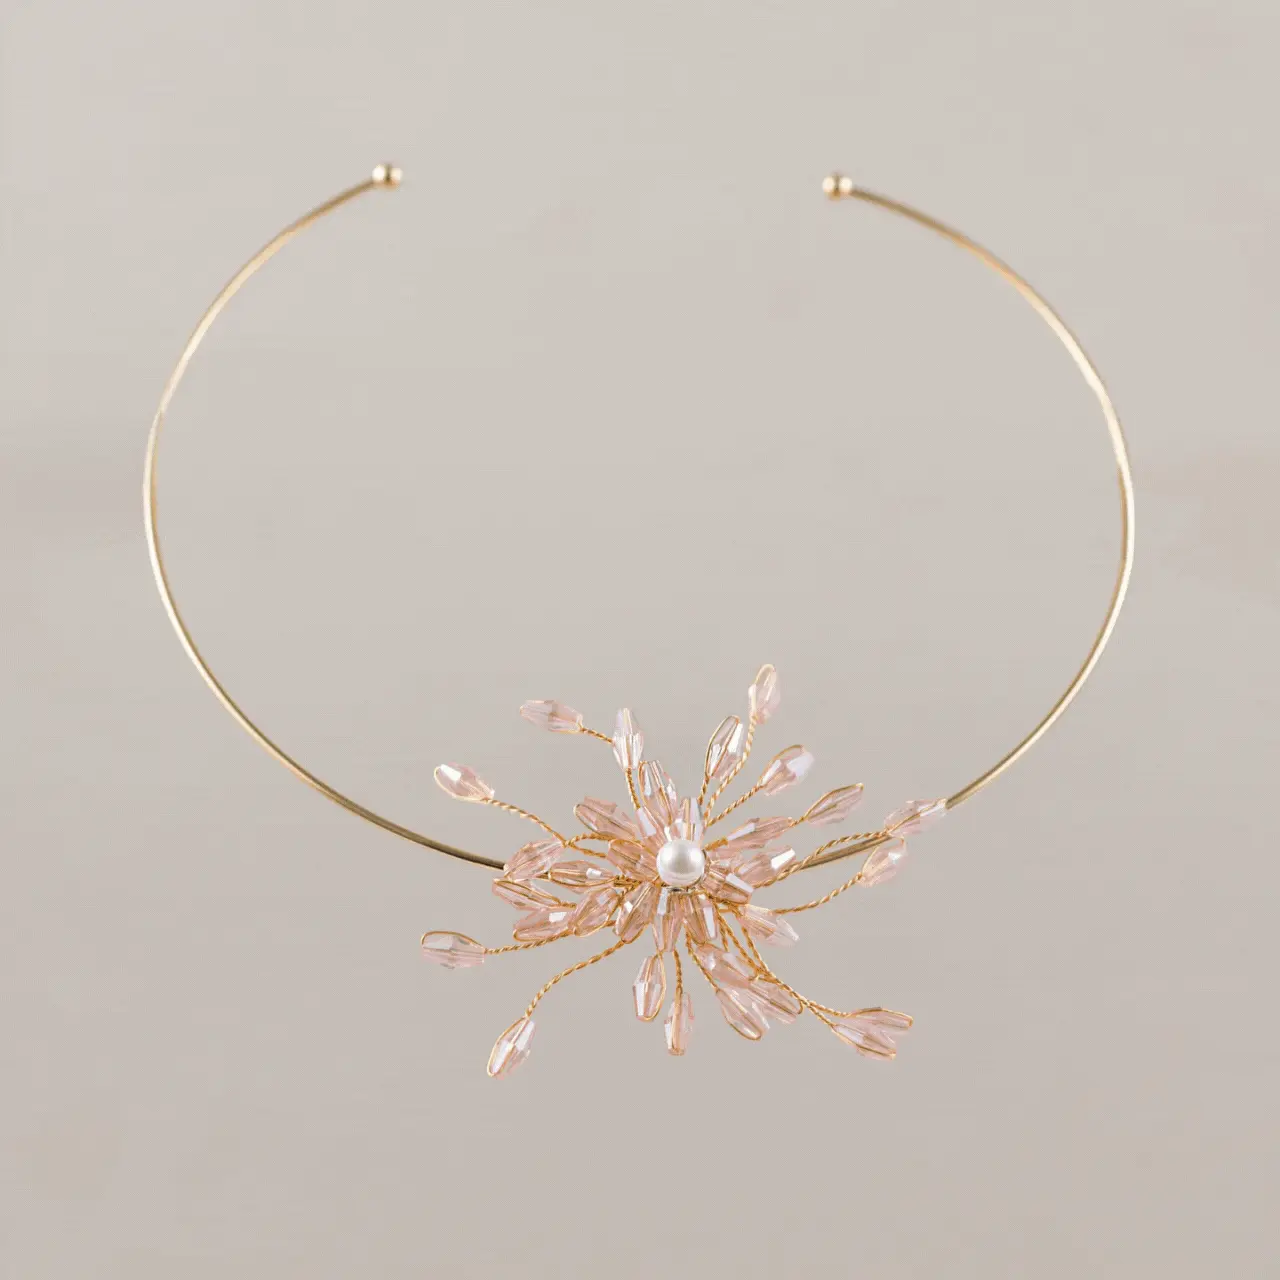 Te traemos el Choker Flor pensado para mujeres rompedoras e innovadoras que quieran hacer de sus joyas el complemento ideal. 